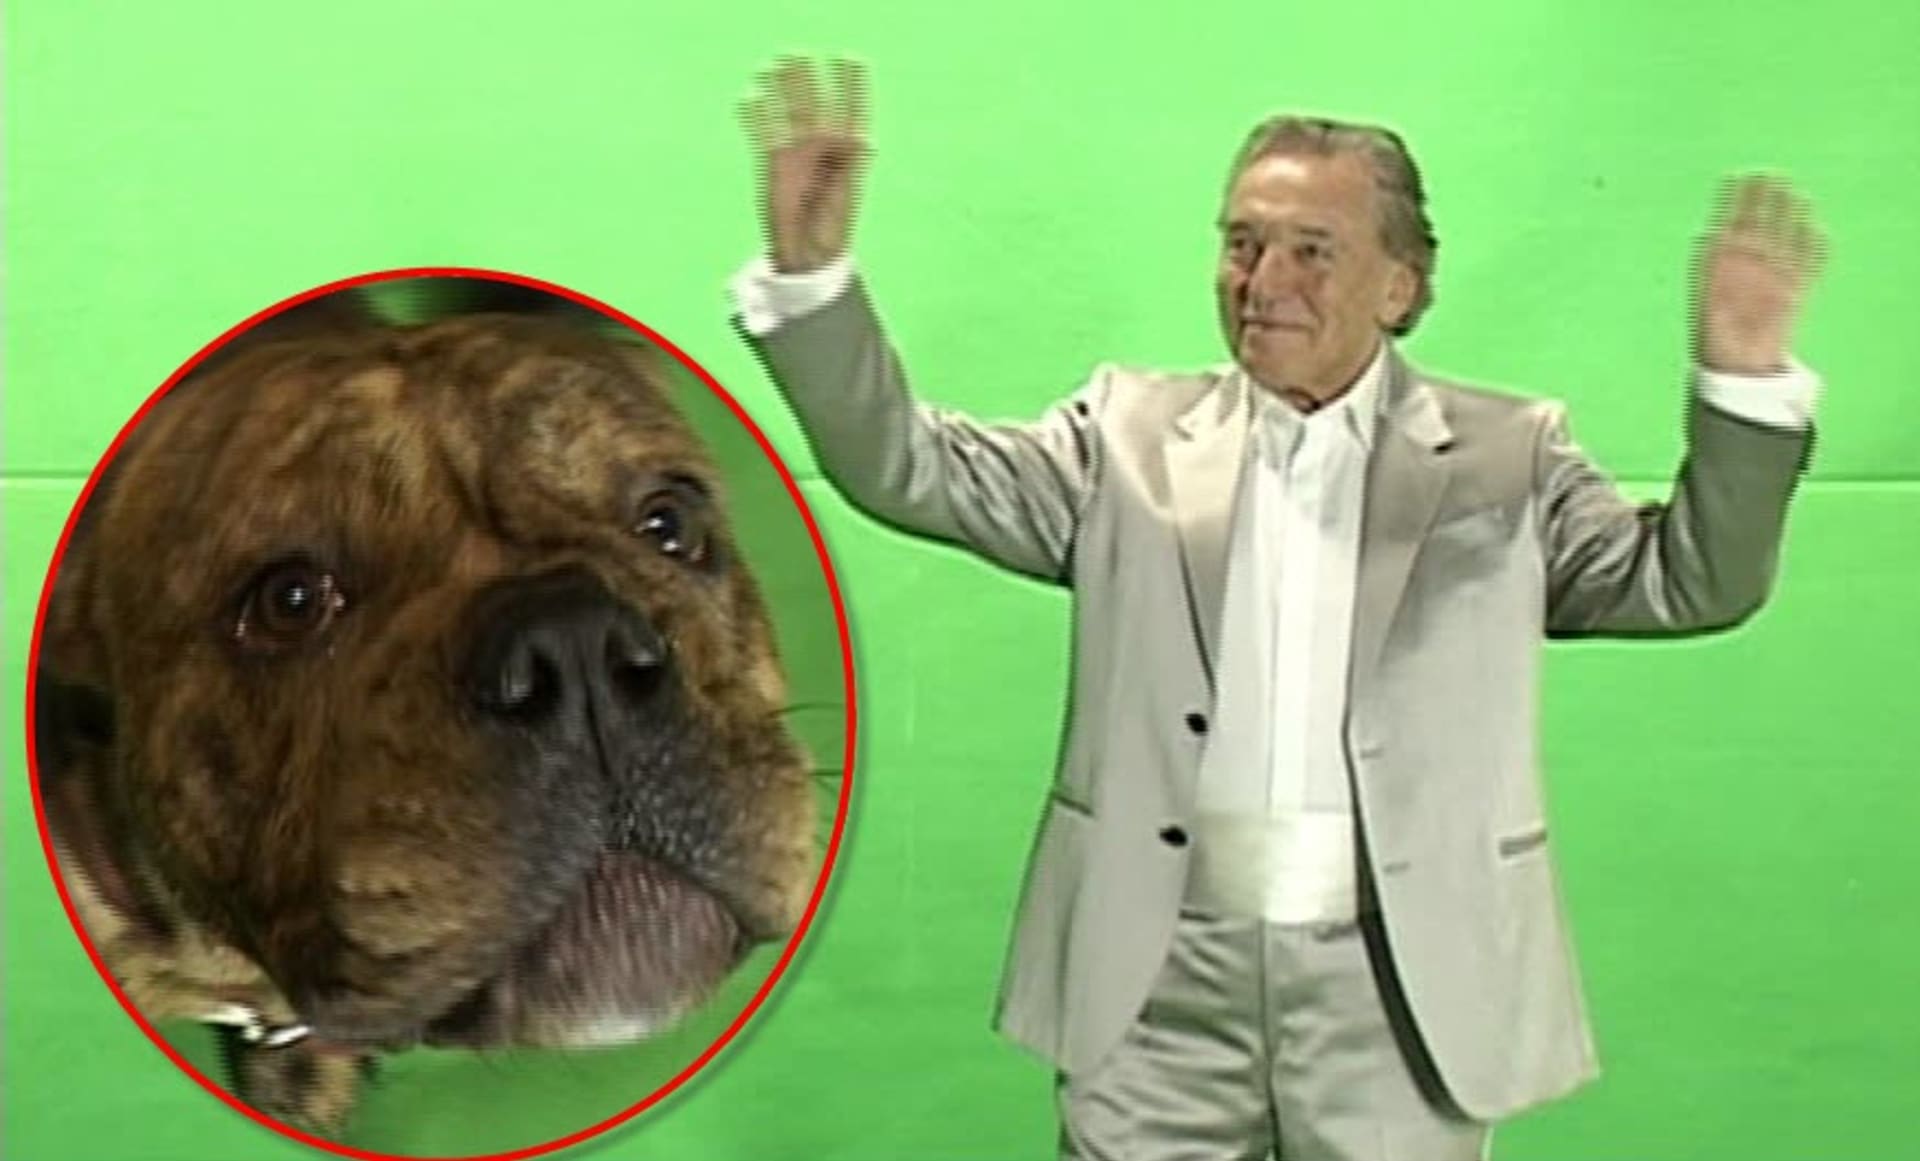 Video VIP zprávy: Karel Gott na to nevypadá, ale je ovládán tínto psem. Tedy... mediálně určitě!